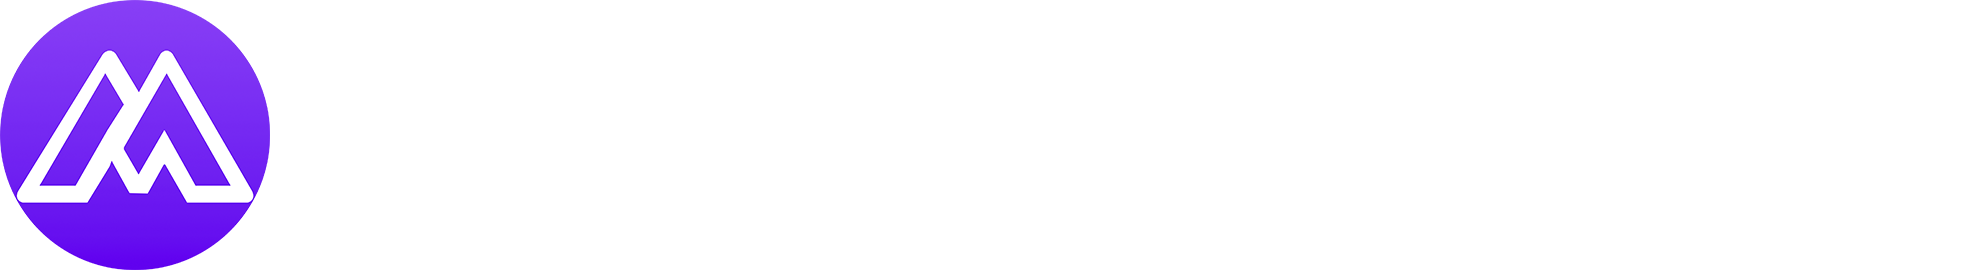 MarketingBlocks AI AI logo